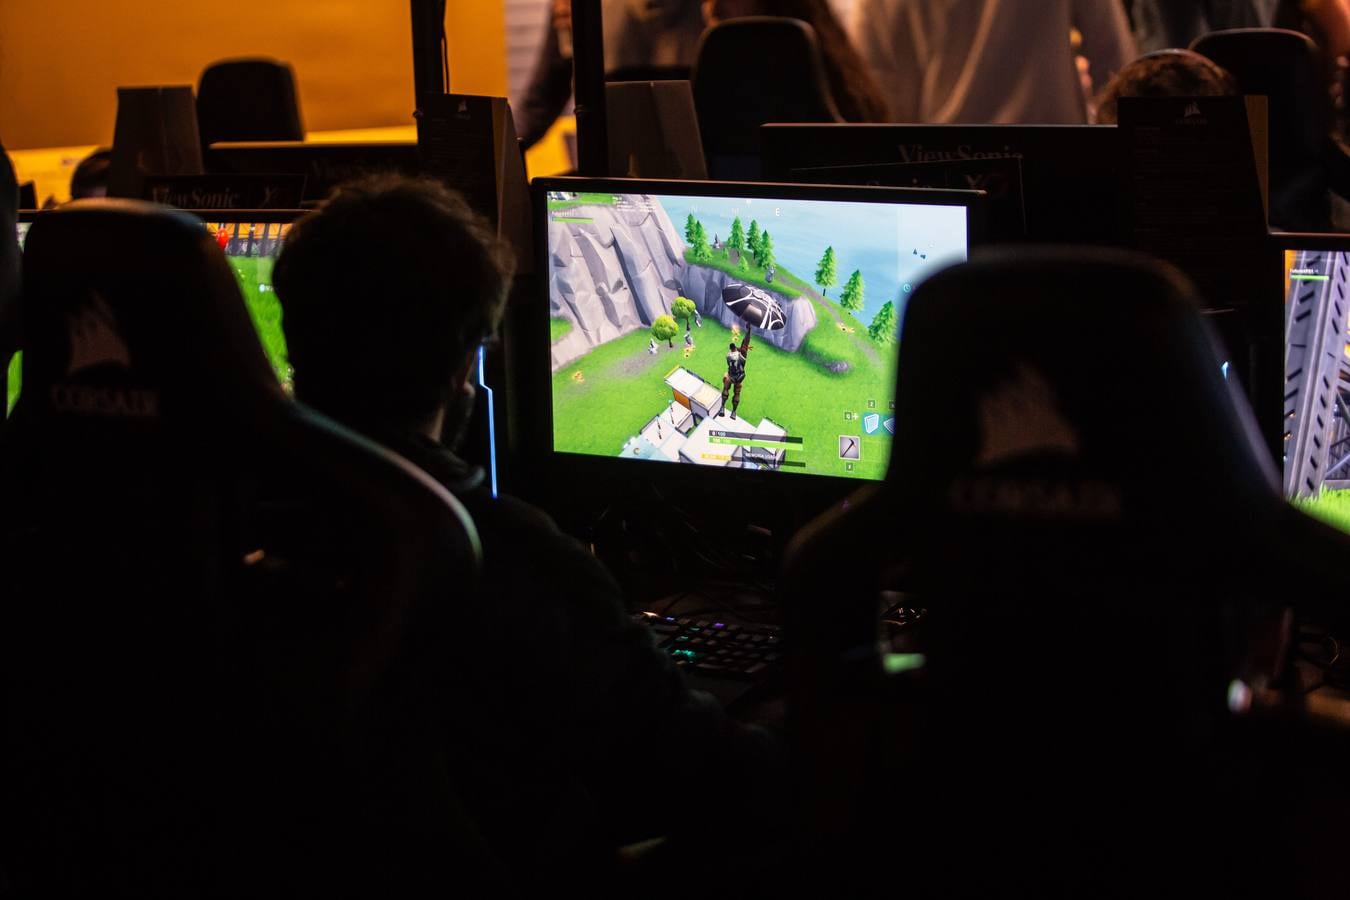 Los asistentes a DramHack Sevilla pueden disfrutar de diversos concursos, actividades y premios relacionados con el «Fornite», así como jugar a videojuegos como «Battlefield V», «Call of Duty» o «League of Legends».